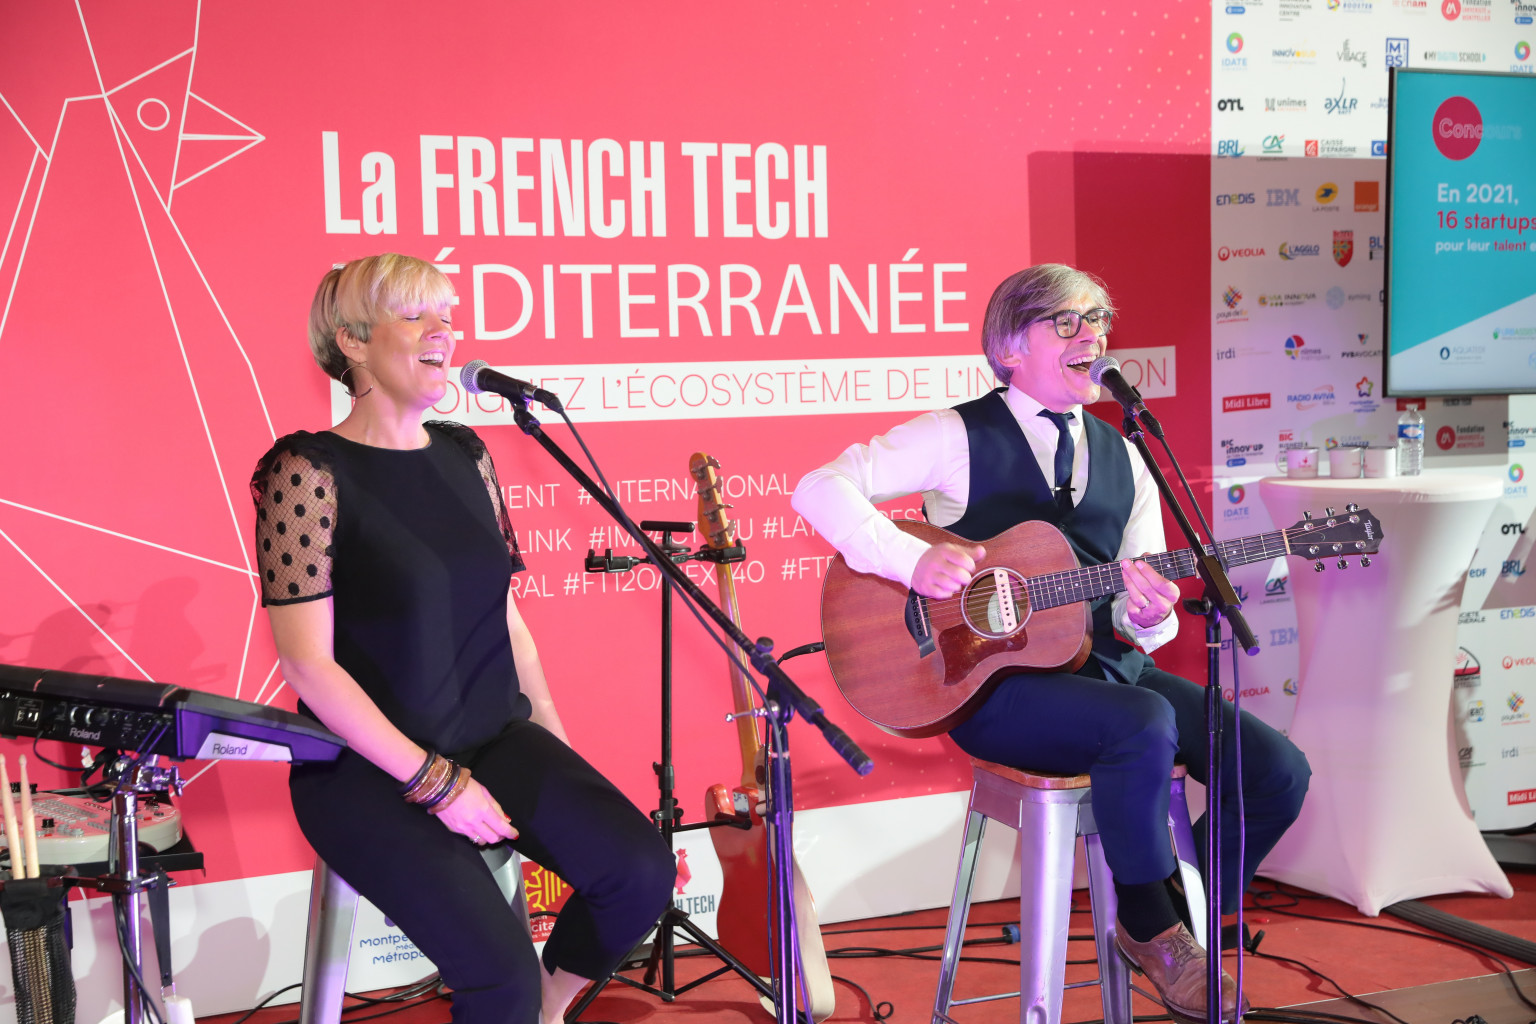 Un duo composée d'une femme qui chante et une homme qui chante et joue de la guitare performent au festival Hello la Tech organisé par French TEch Méditerranée.